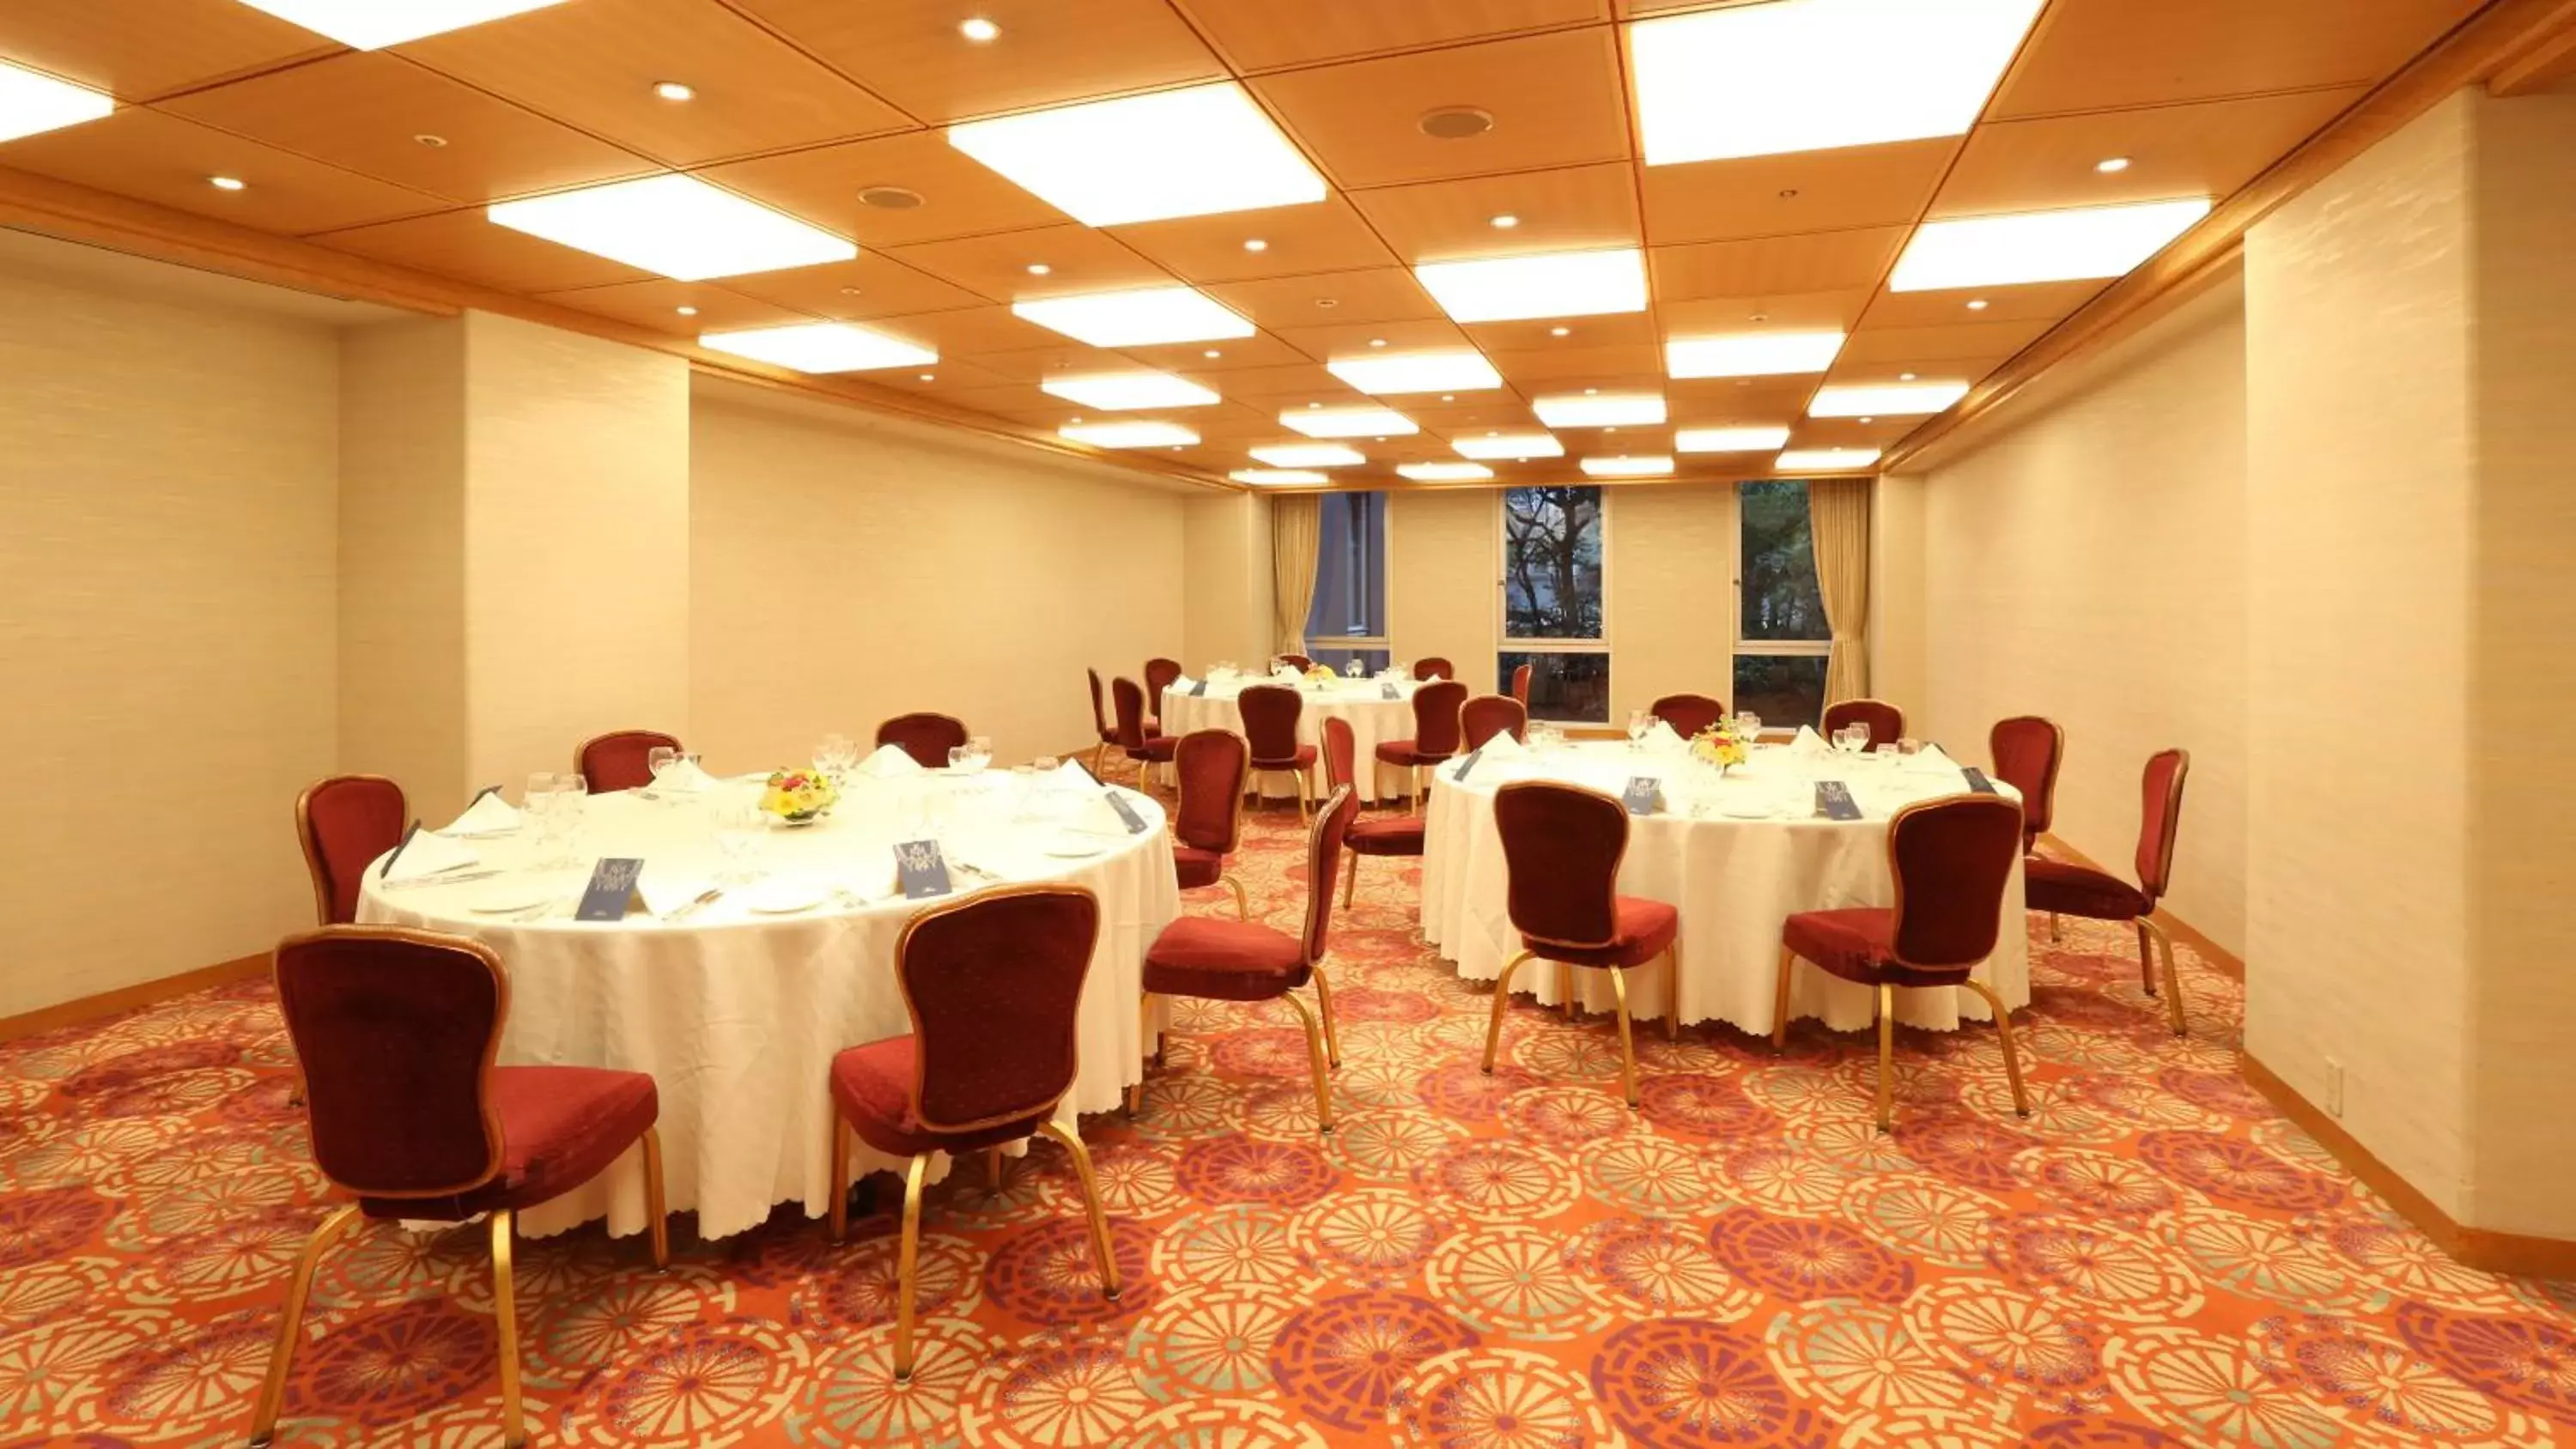 Banquet/Function facilities, Banquet Facilities in RIHGA Royal Hotel Osaka